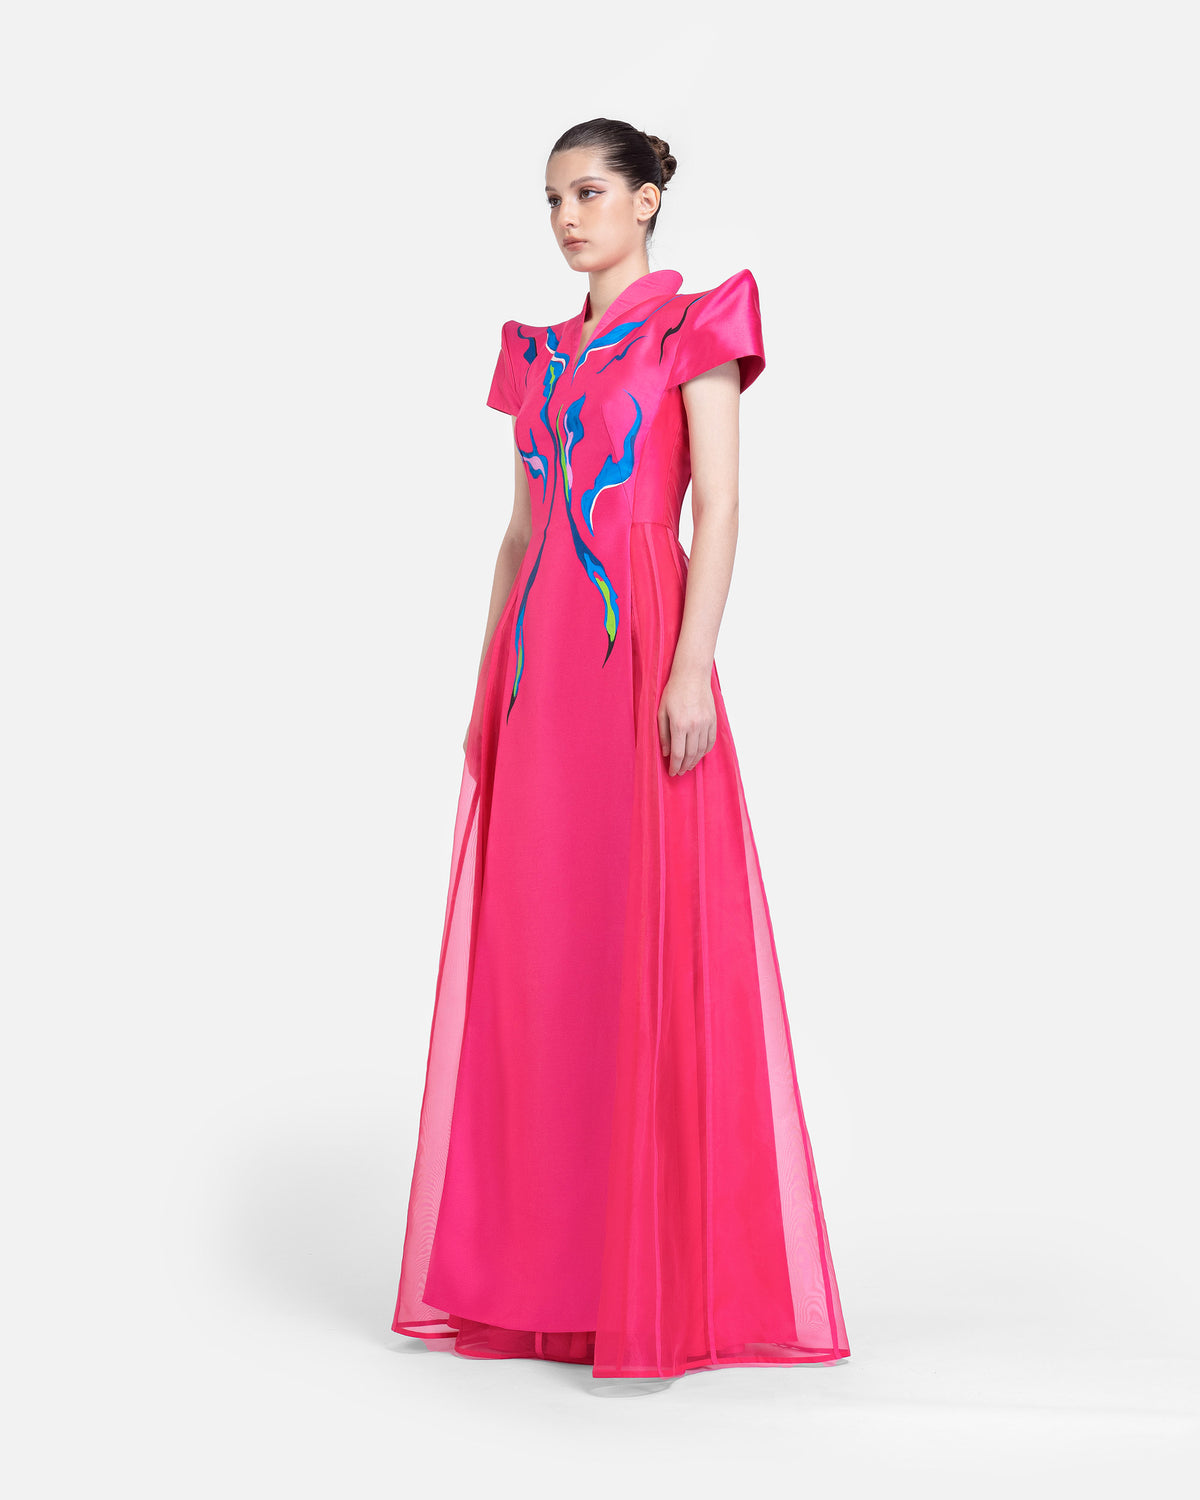 Bloom - Structured Shoulder Pink Evening Dress